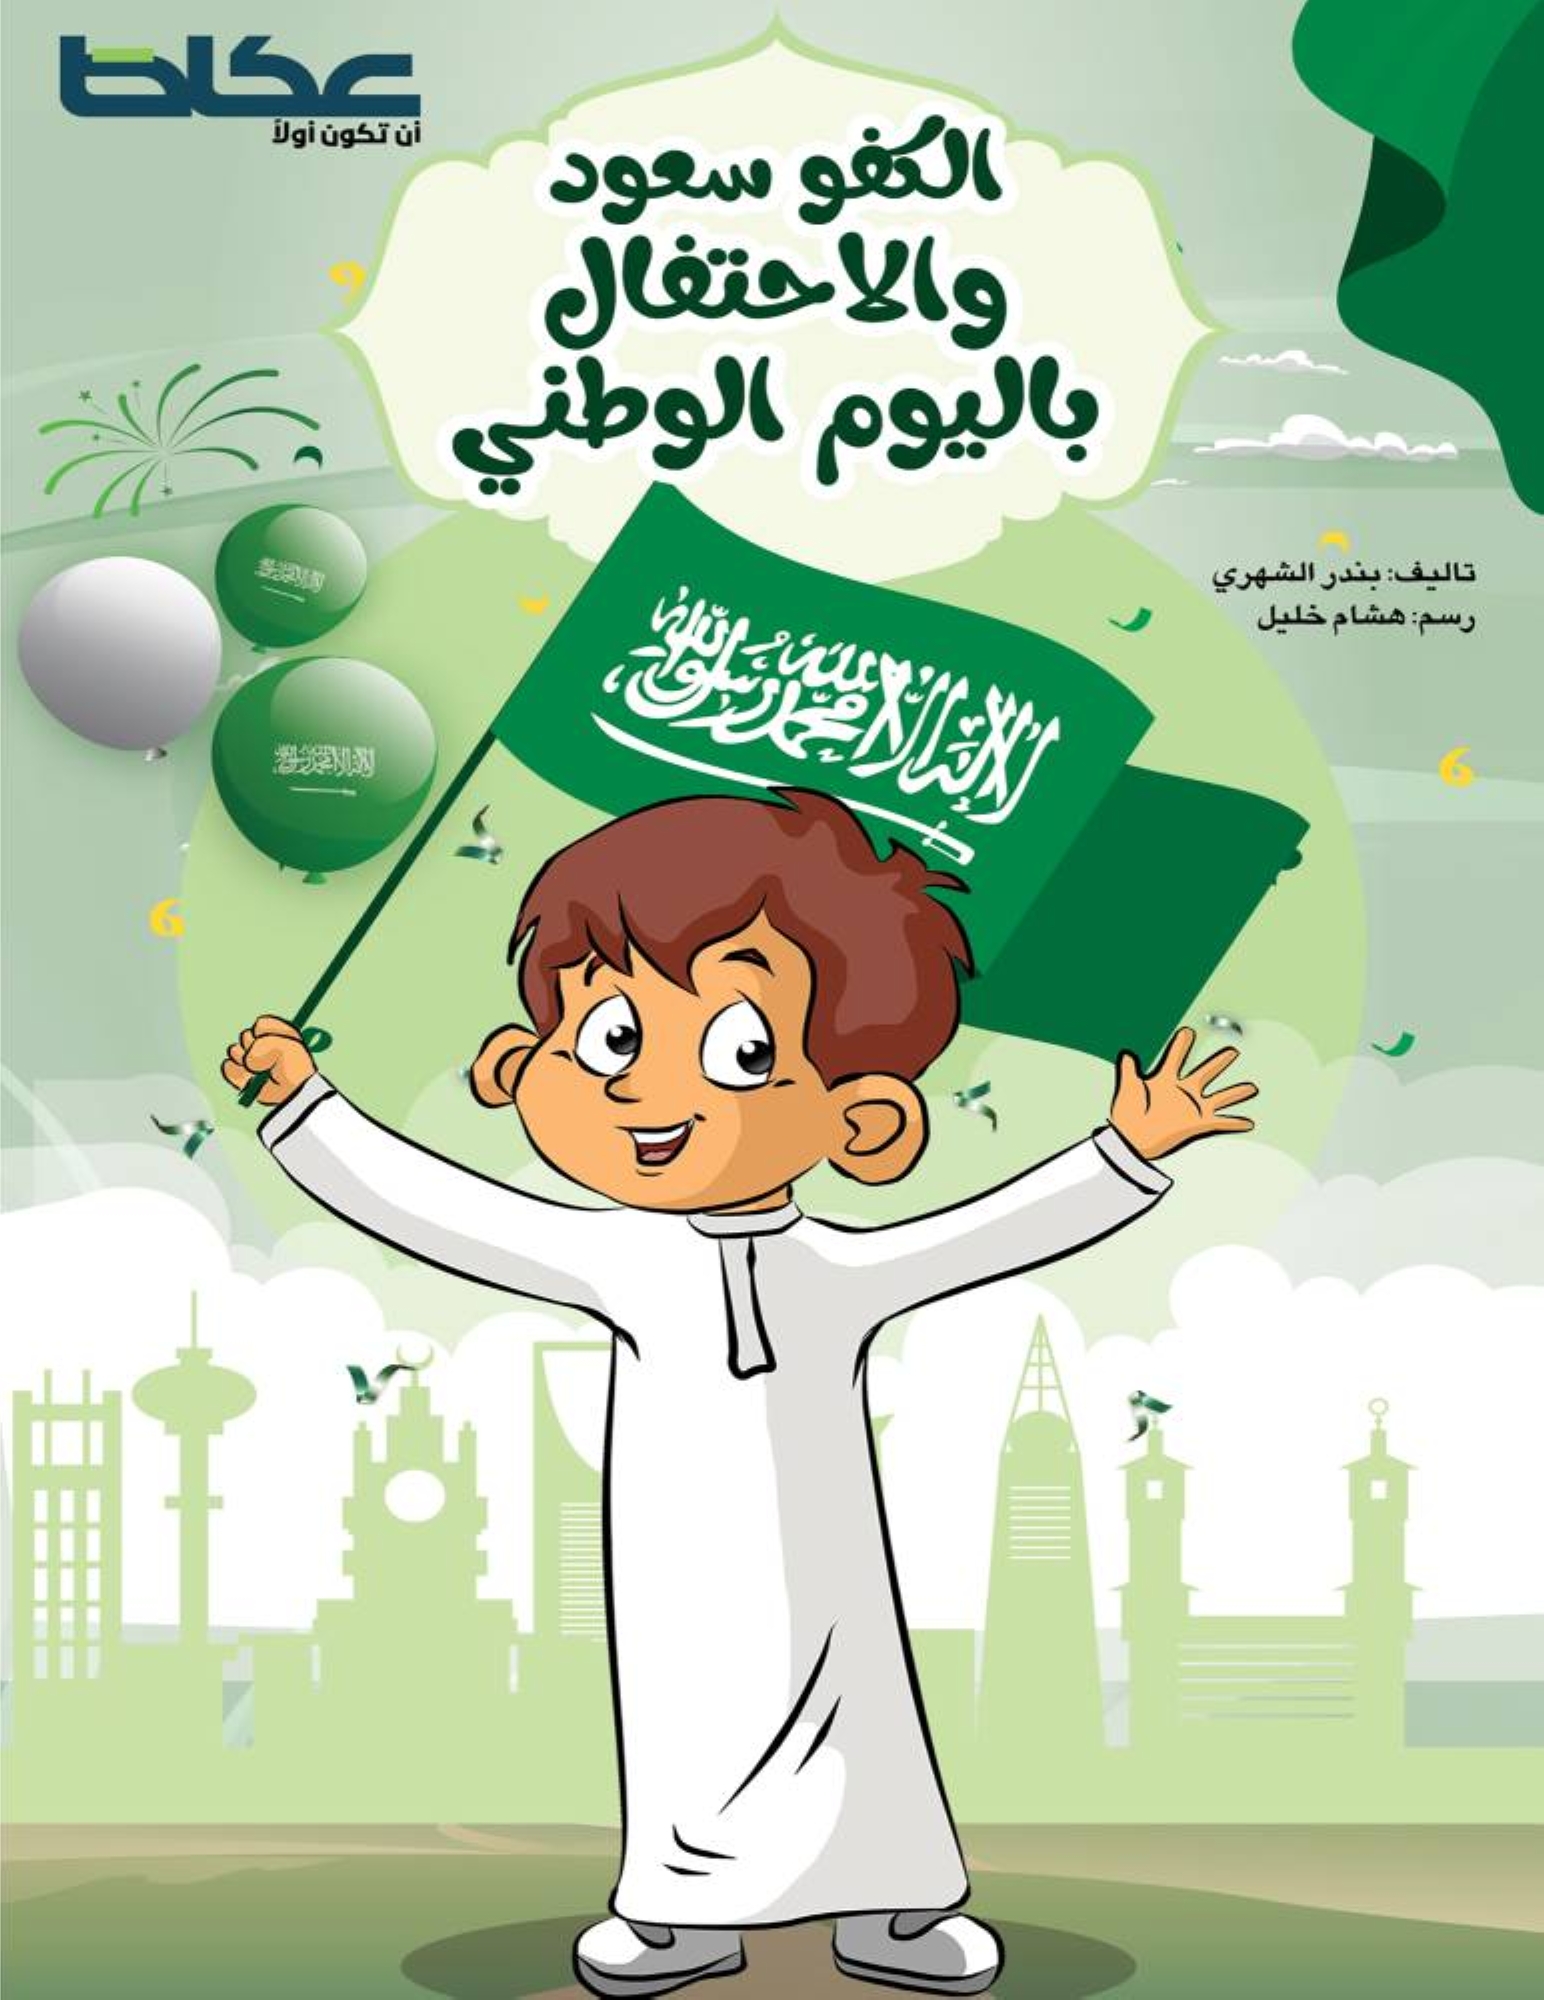  سعود والاحتفال باليوم الوطني